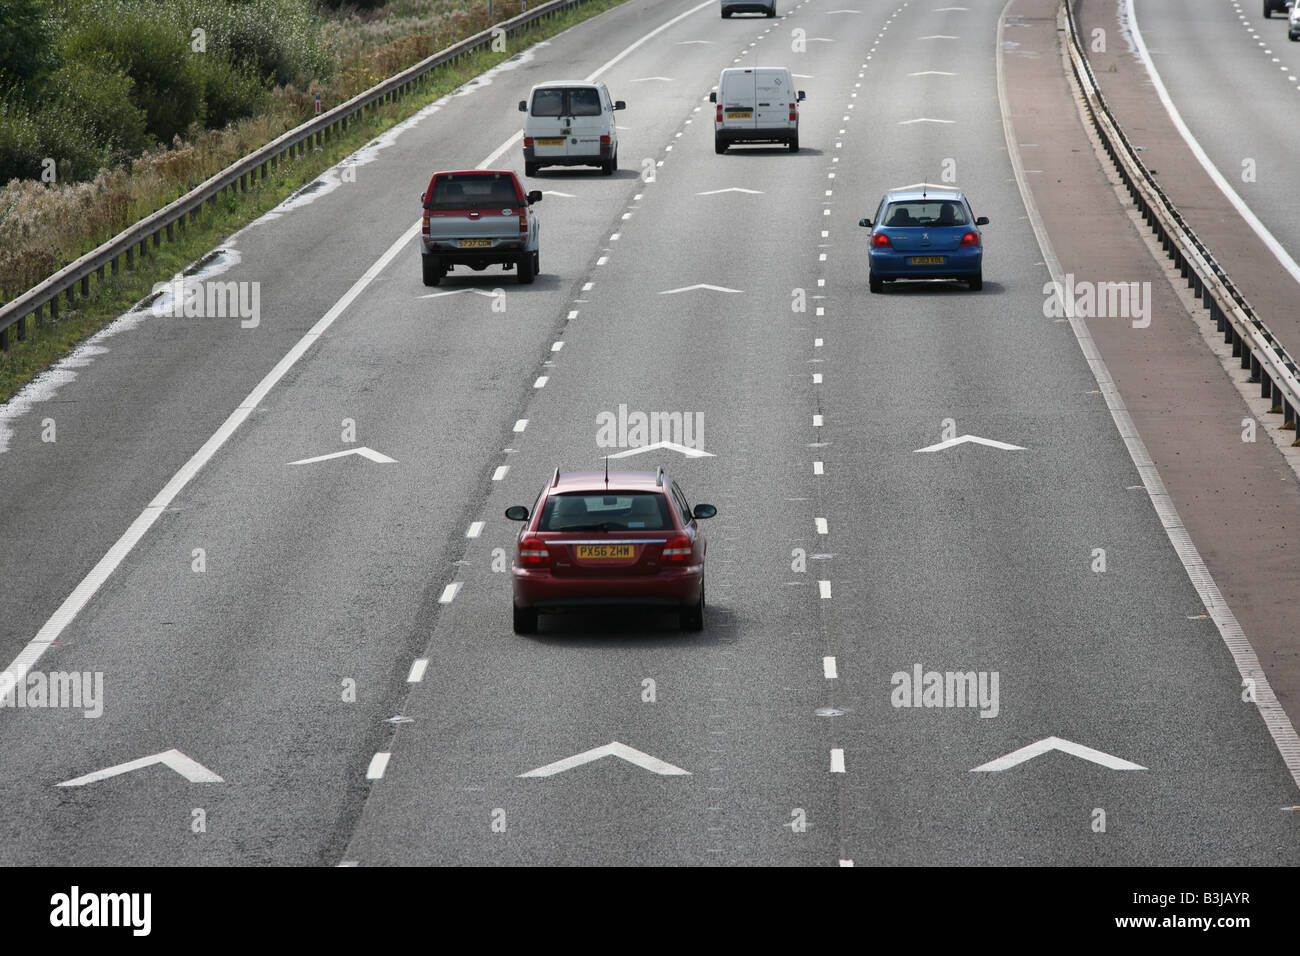 Halten Sie Abstand 2 Sparren Autobahn Fahrbahnmarkierungen und Verkehr auf M56, Cheshire, UK Stockfoto